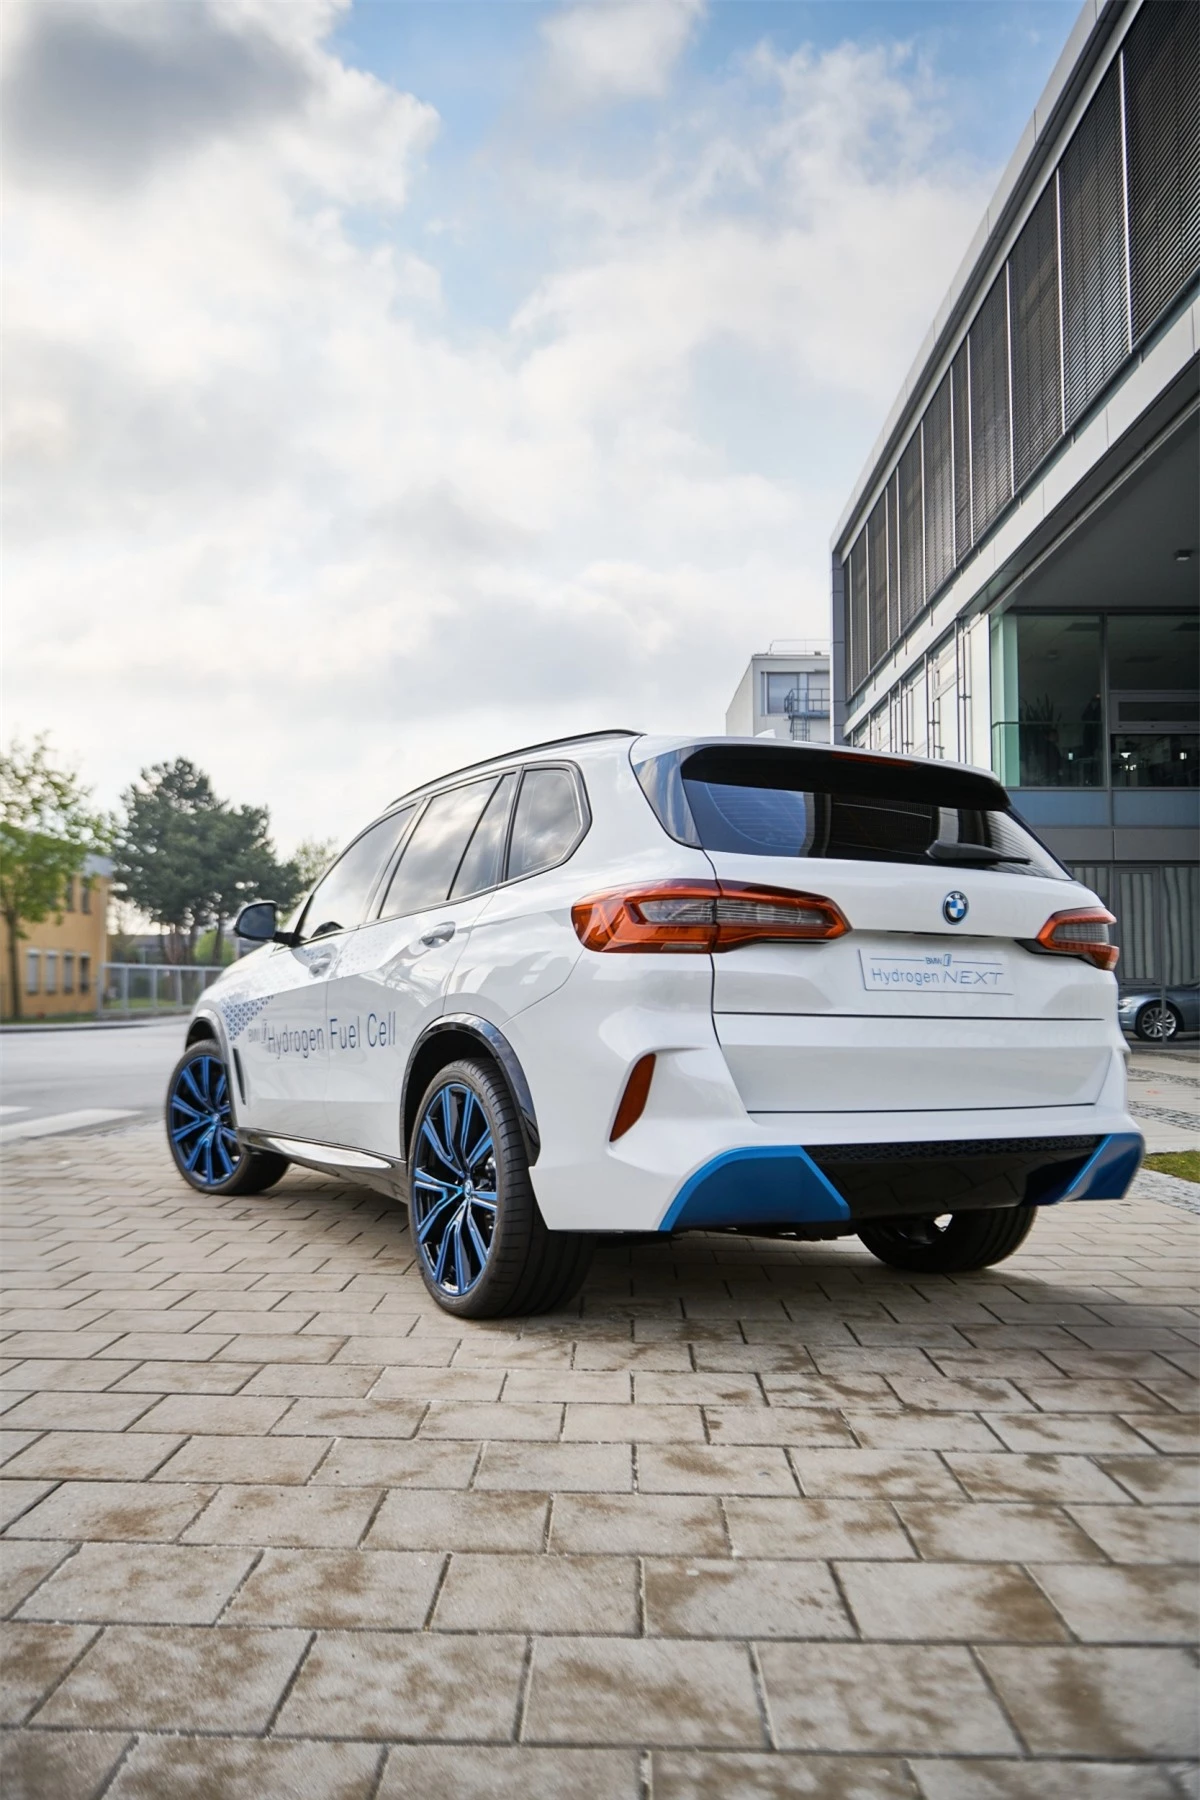 BMW trước đây đã tuyên bố: “Mẫu xe sử dụng công nghệ pin nhiên liệu hydro sẽ được Tập đoàn BMW đưa ra thị trường sớm nhất vào nửa cuối thập kỷ này, tùy thuộc vào điều kiện và yêu cầu của thị trường toàn cầu